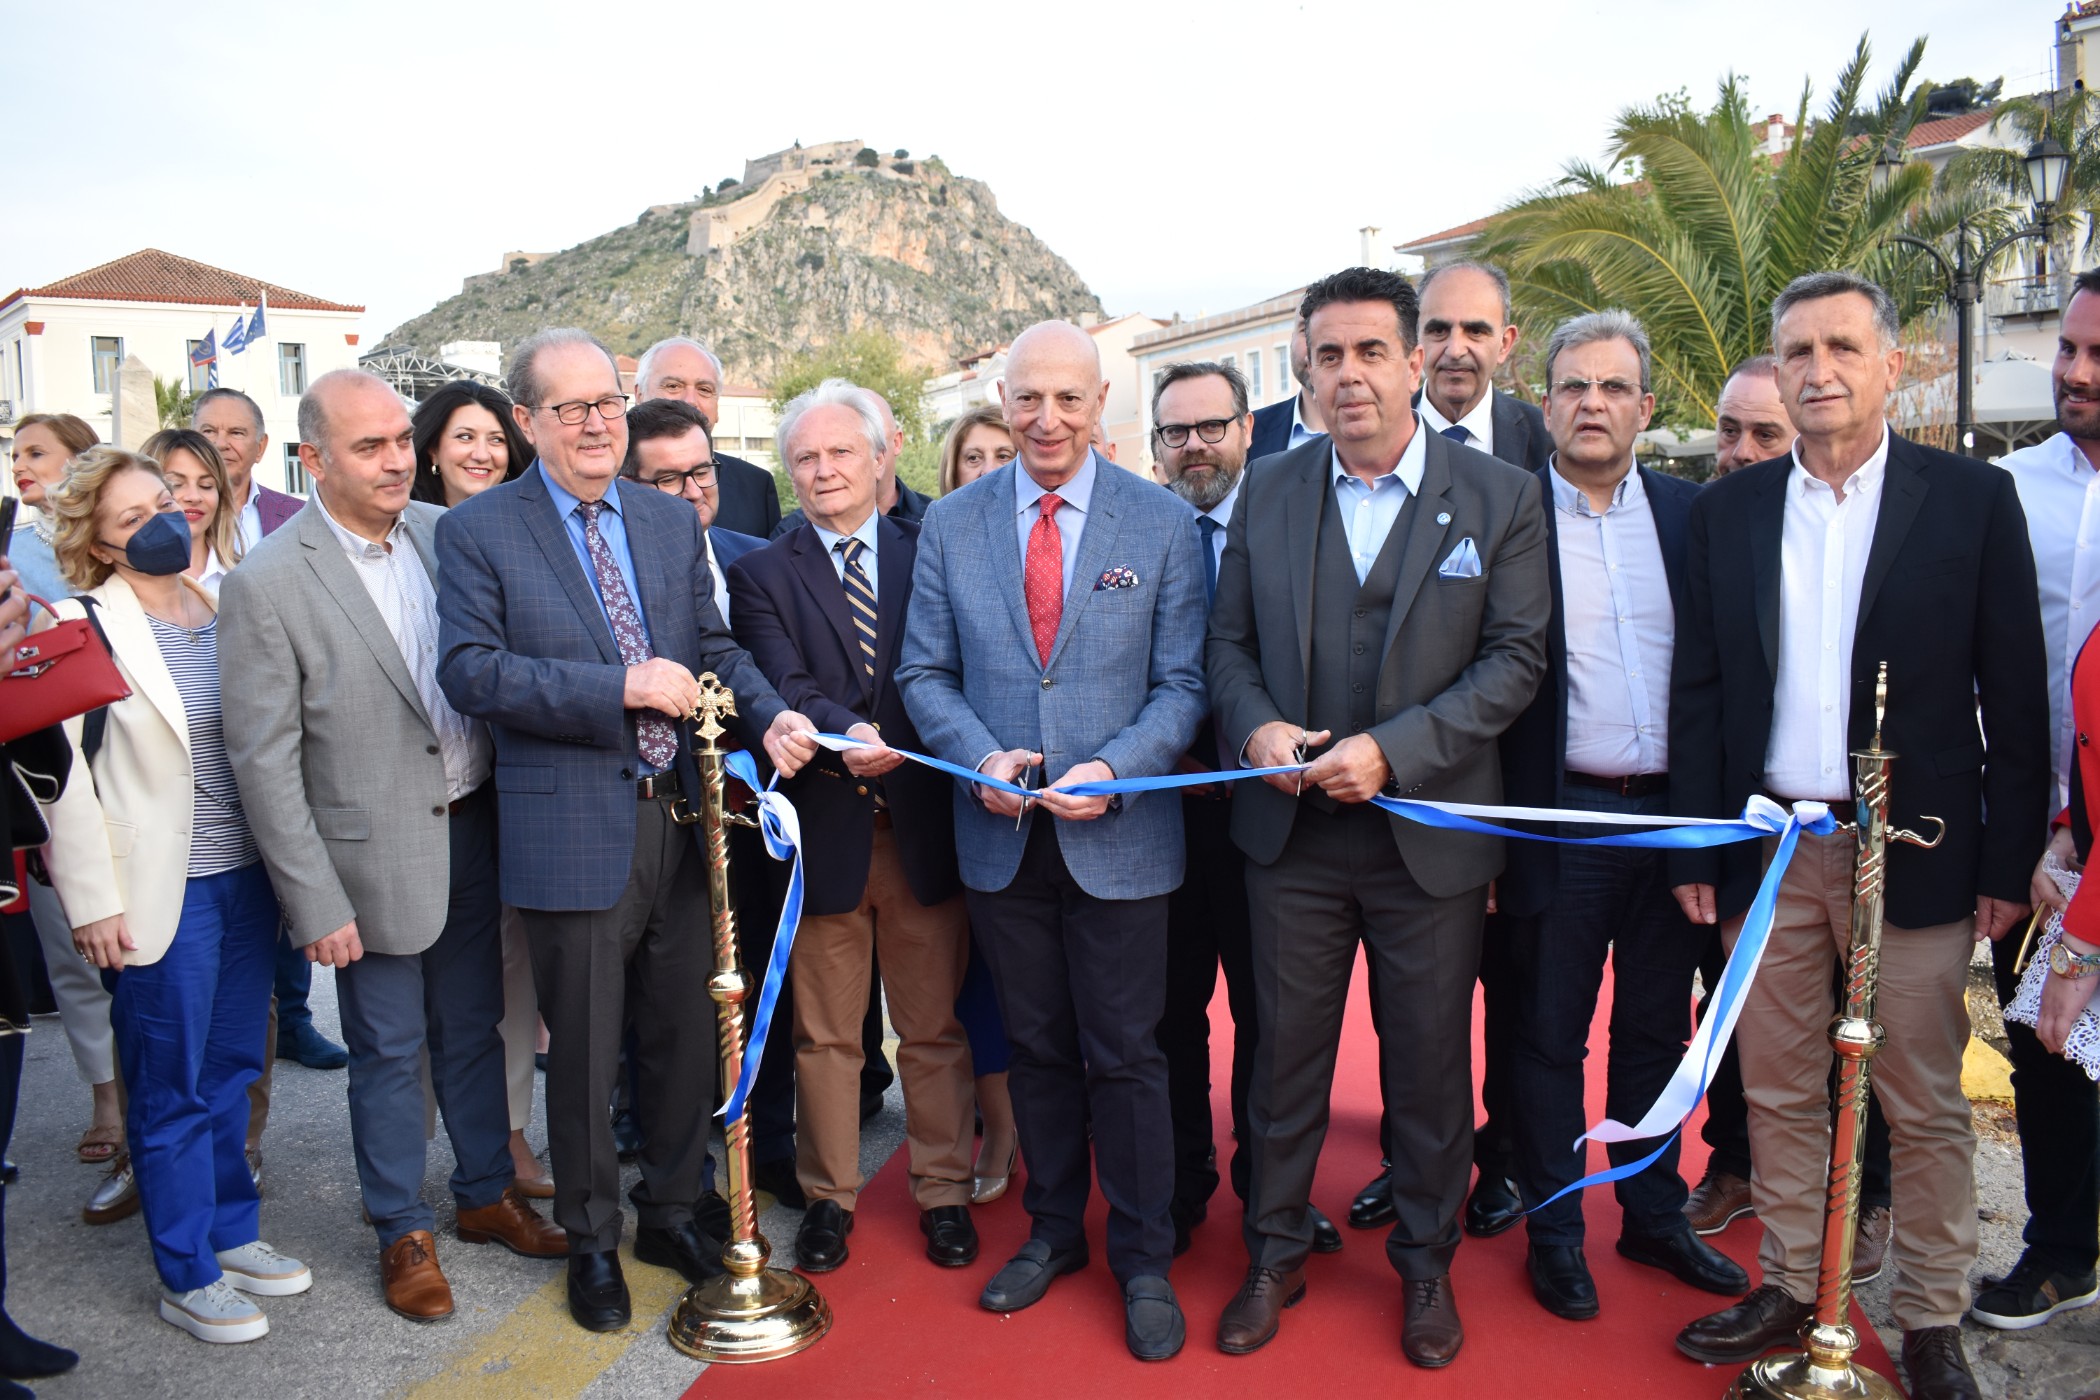 Εγκαινιάστηκε από τον περιφερειάρχη Πελοποννήσου Π. Νίκα το περίπτερο τουριστικής πληροφόρησης στο Ναύπλιο - ΠΕΛΟΠΟΝΝΗΣΟΣ